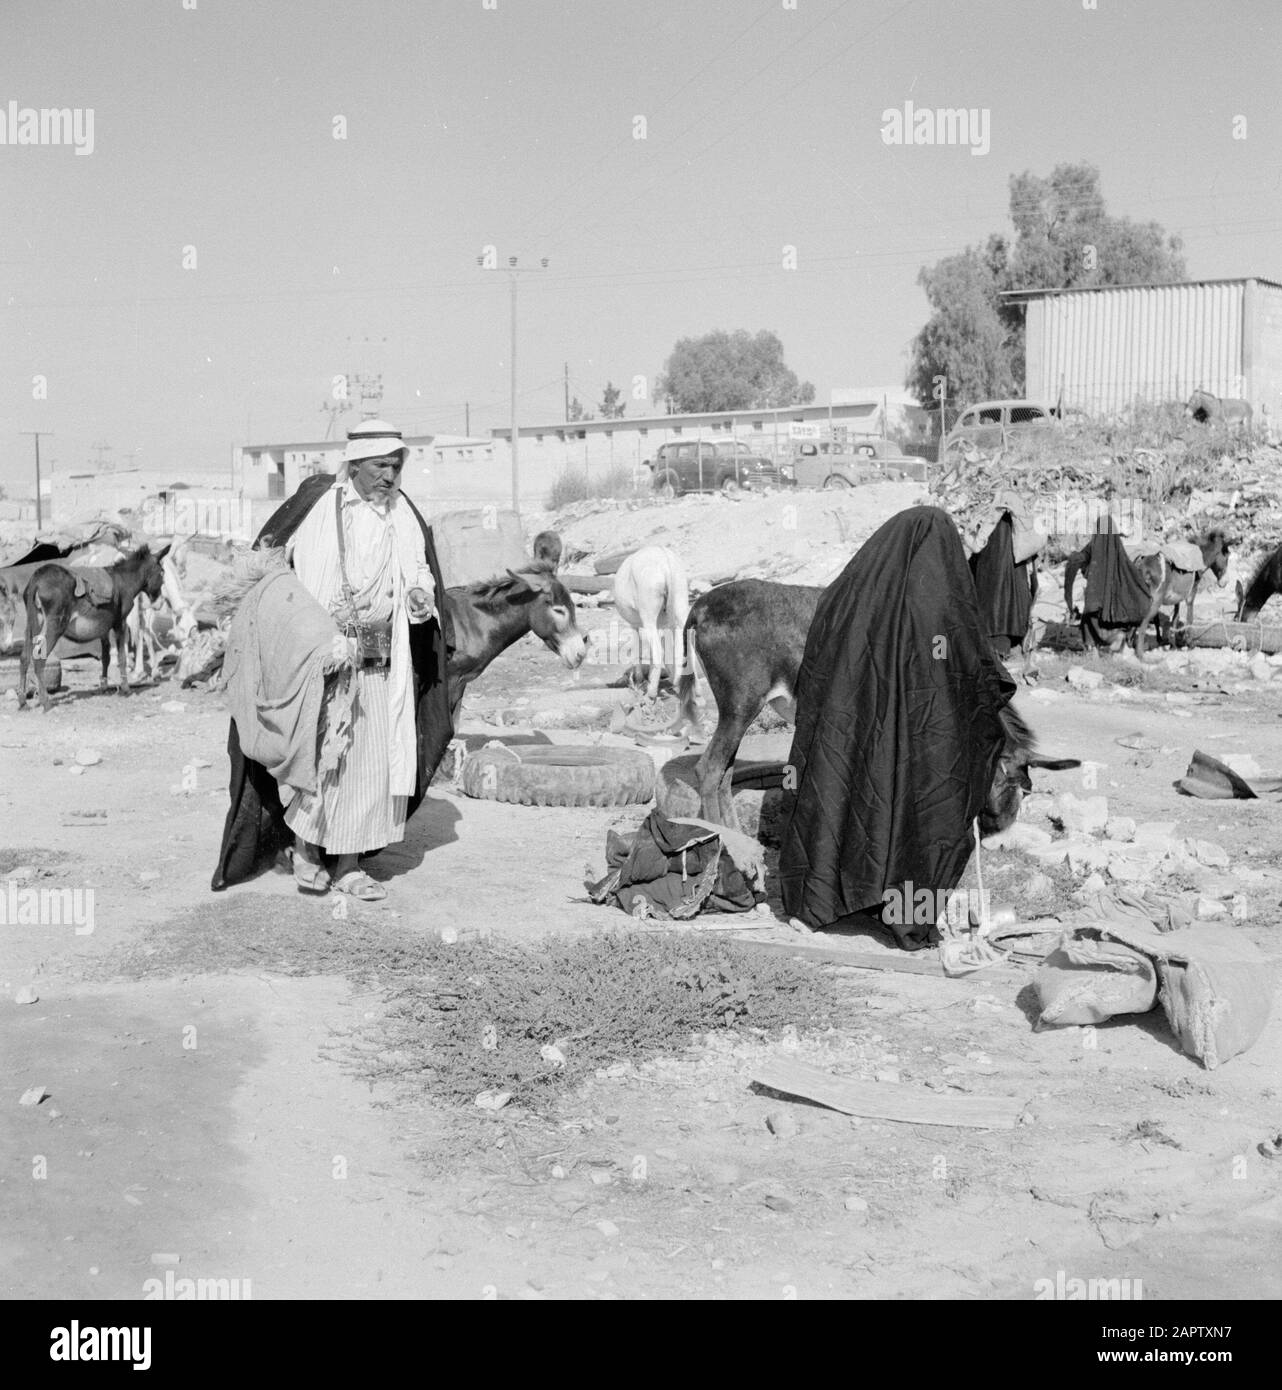 Bedouins with donkeys. Report /Series: Israel 1960-1965: Bedouins in Beershewa (Beer Sheva). Stock Photo